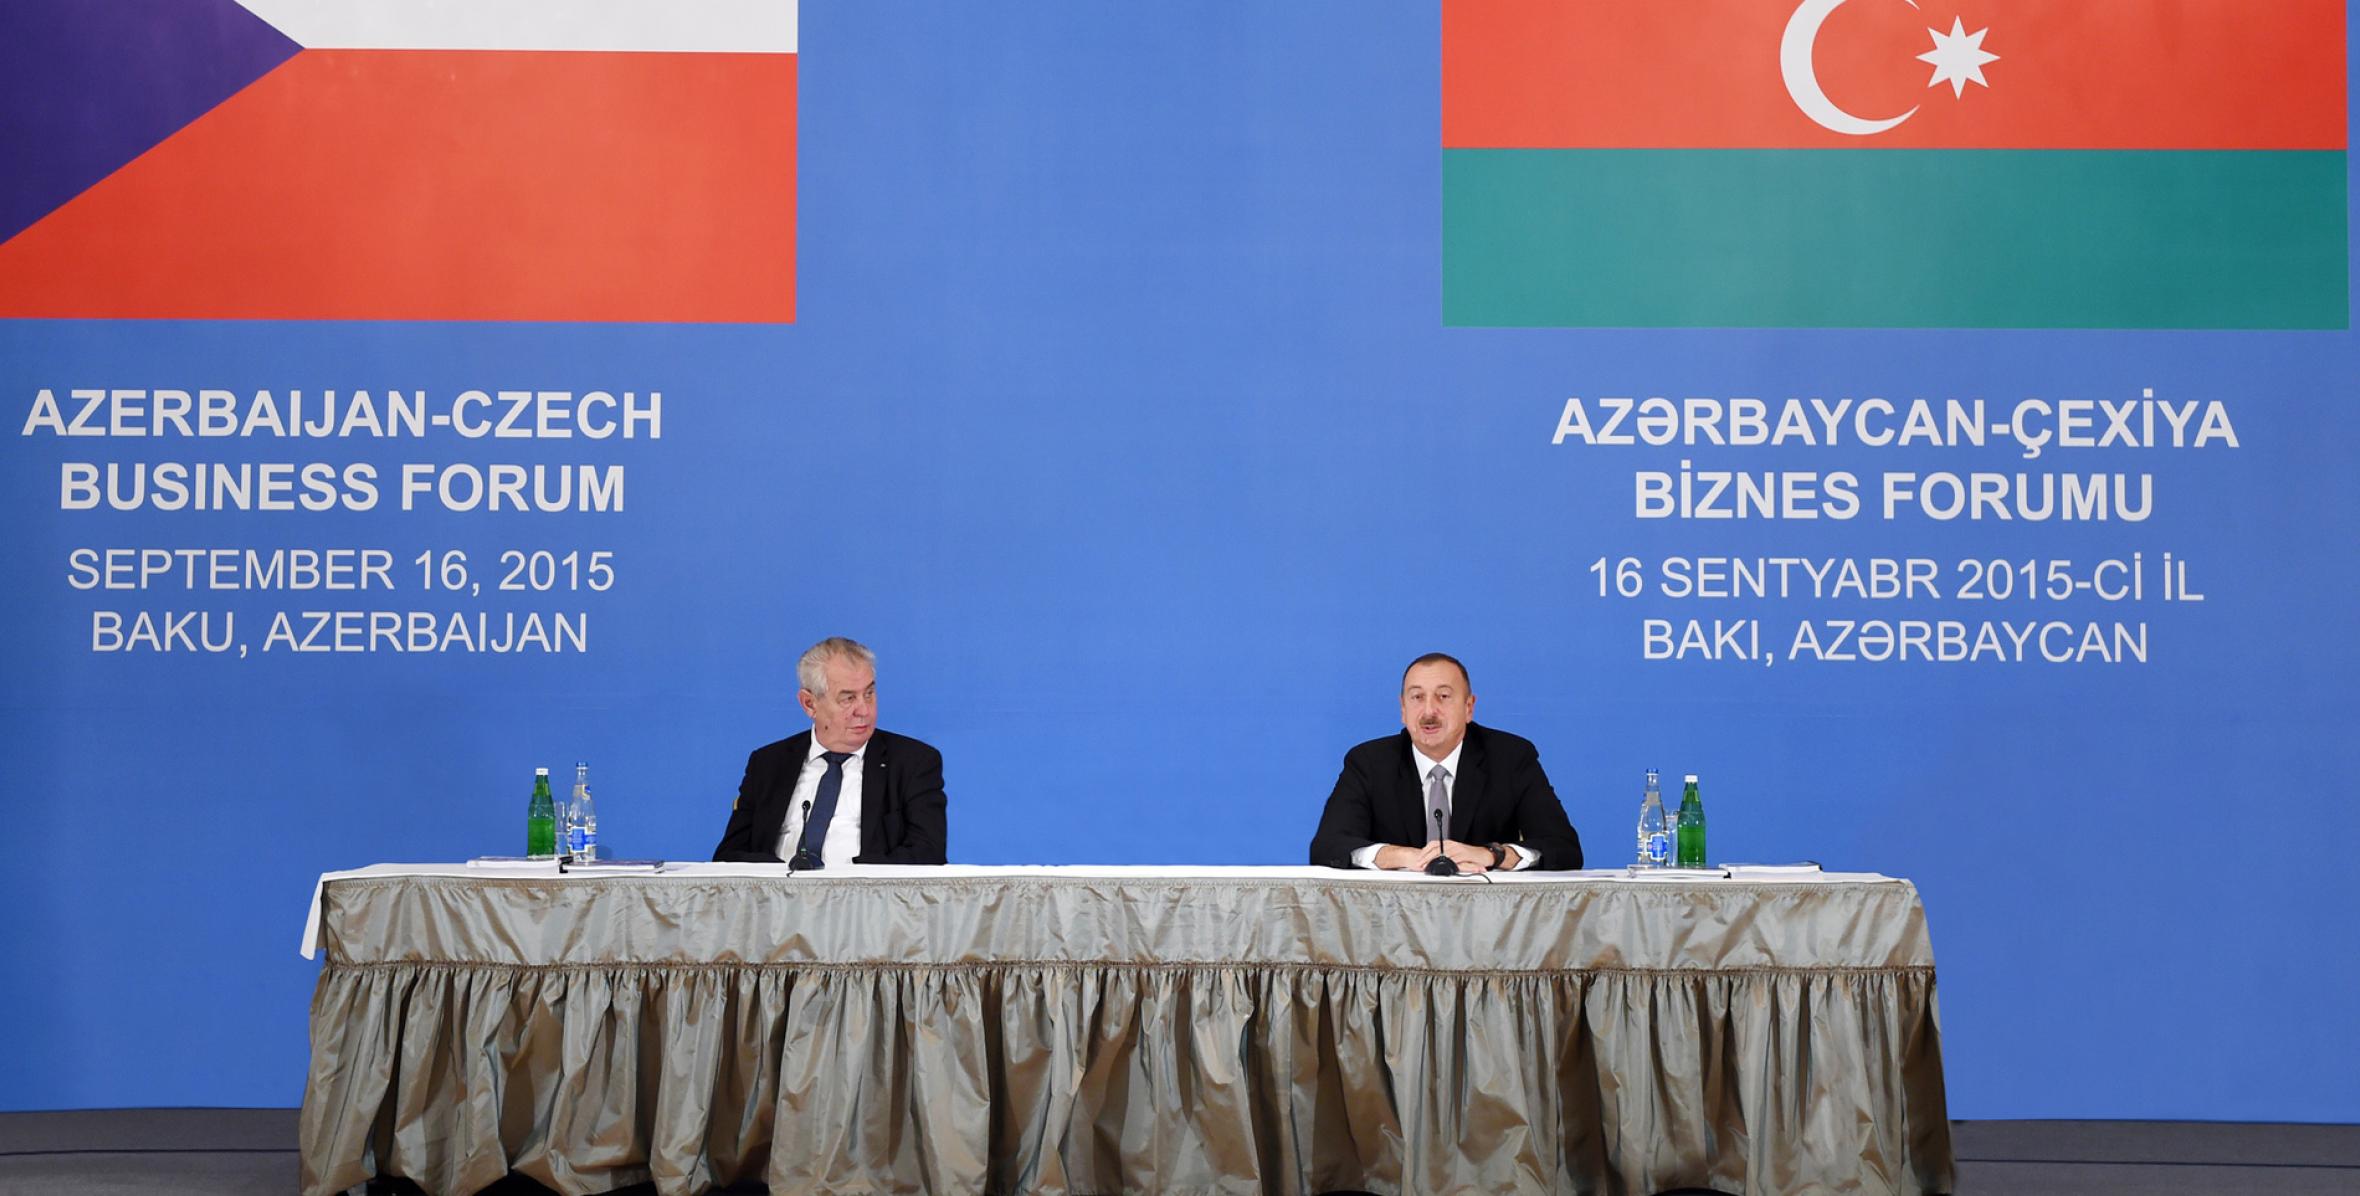 Speech by Ilham Aliyev at the Azerbaijani-Czech Business Forum